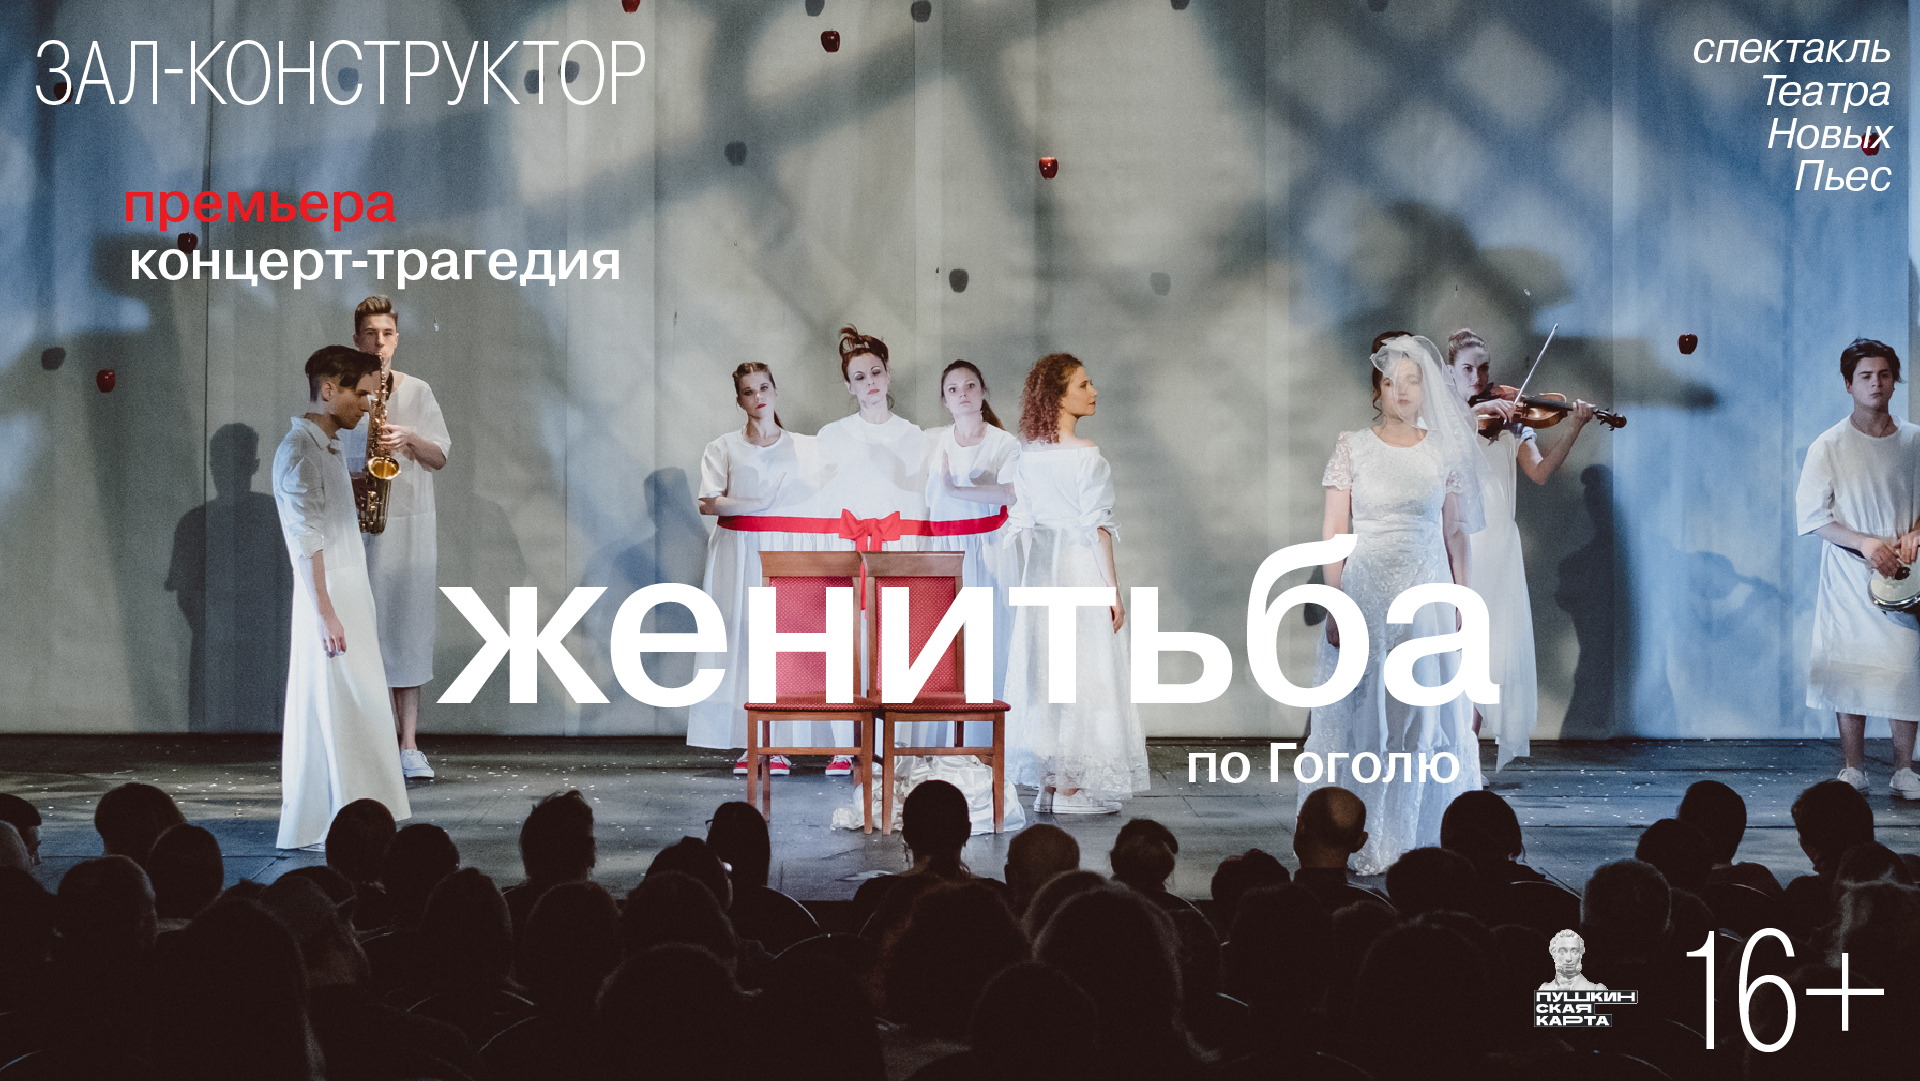 Премьера. Концерт-трагедия «Женитьба» по Гоголю